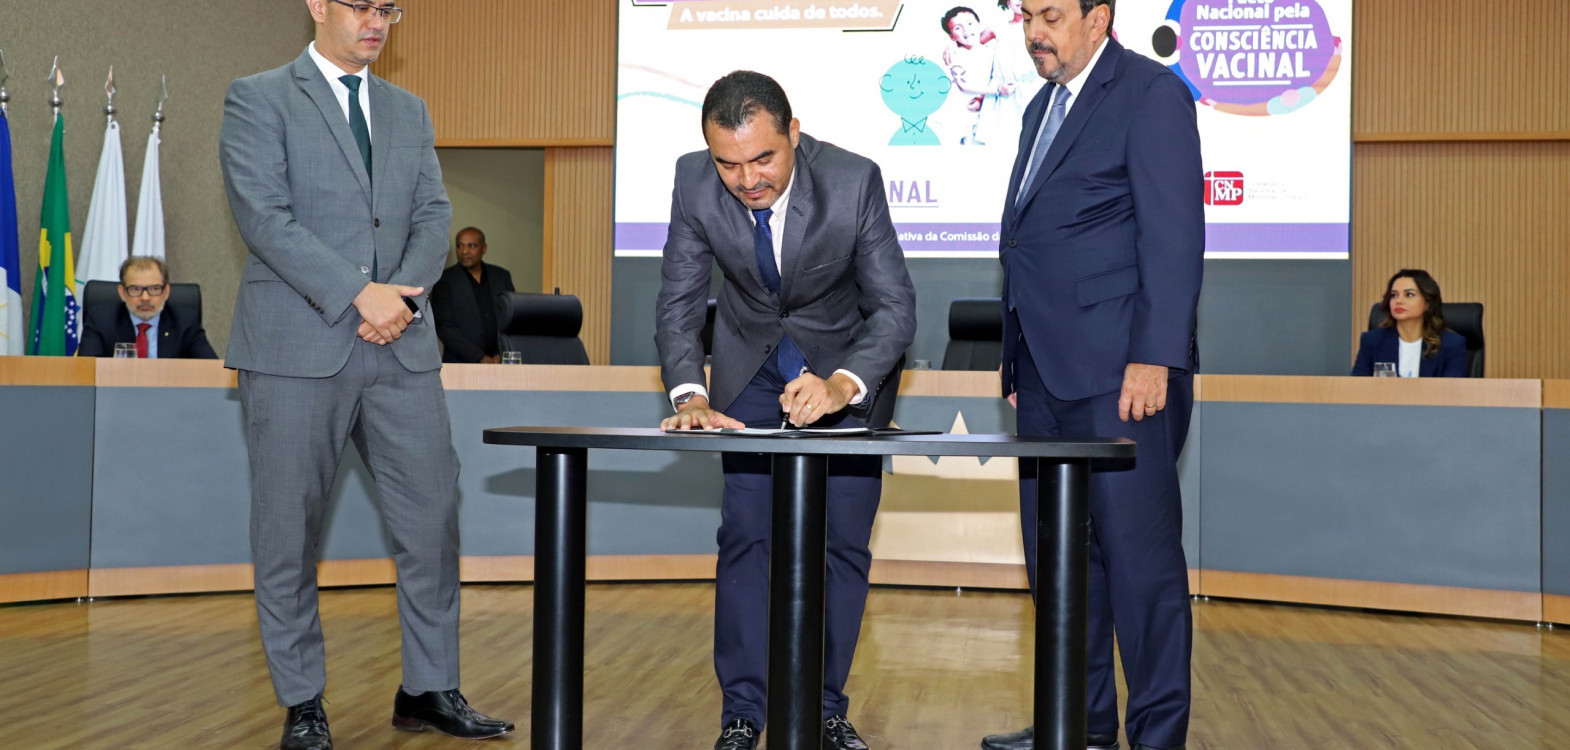 Governador Wanderlei Barbosa no momento da assinatura de adesão ao Pacto Nacional pela Consciência Vacinal no auditório do Ministério Público Estadual